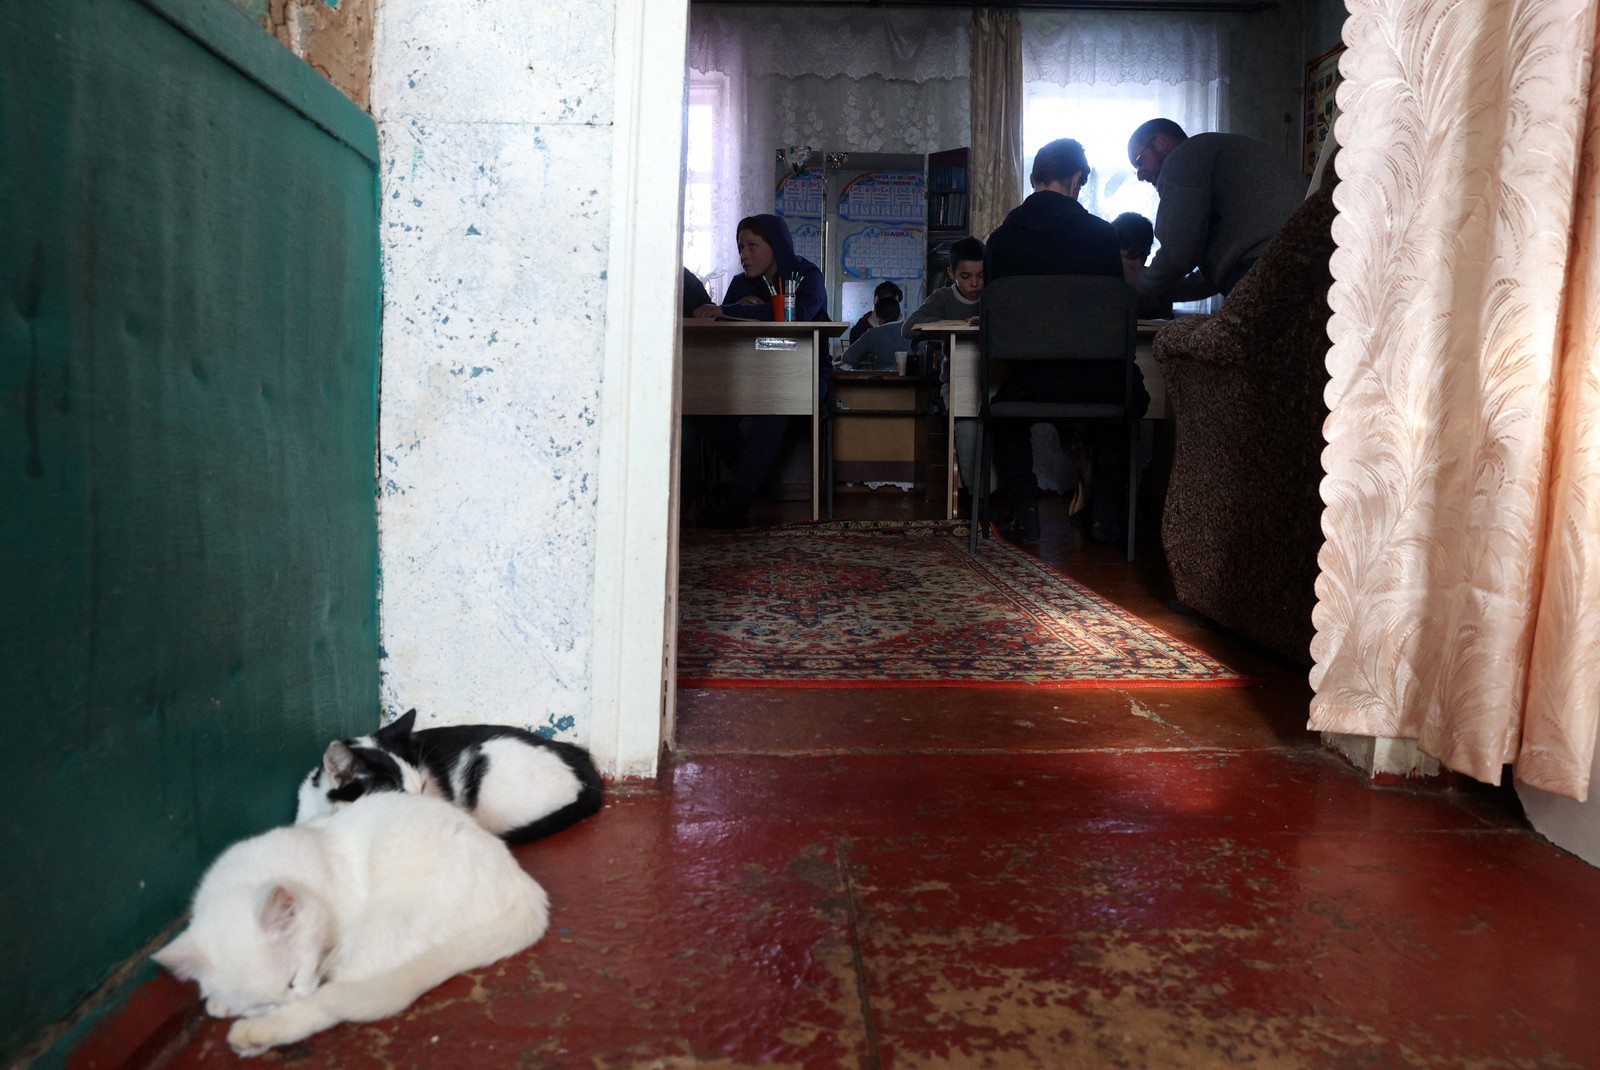 Em Shandrygolove, restam apenas 15 crianças e não há eletricidade nem Internet — Foto: Anatolii Stepanov / AFP